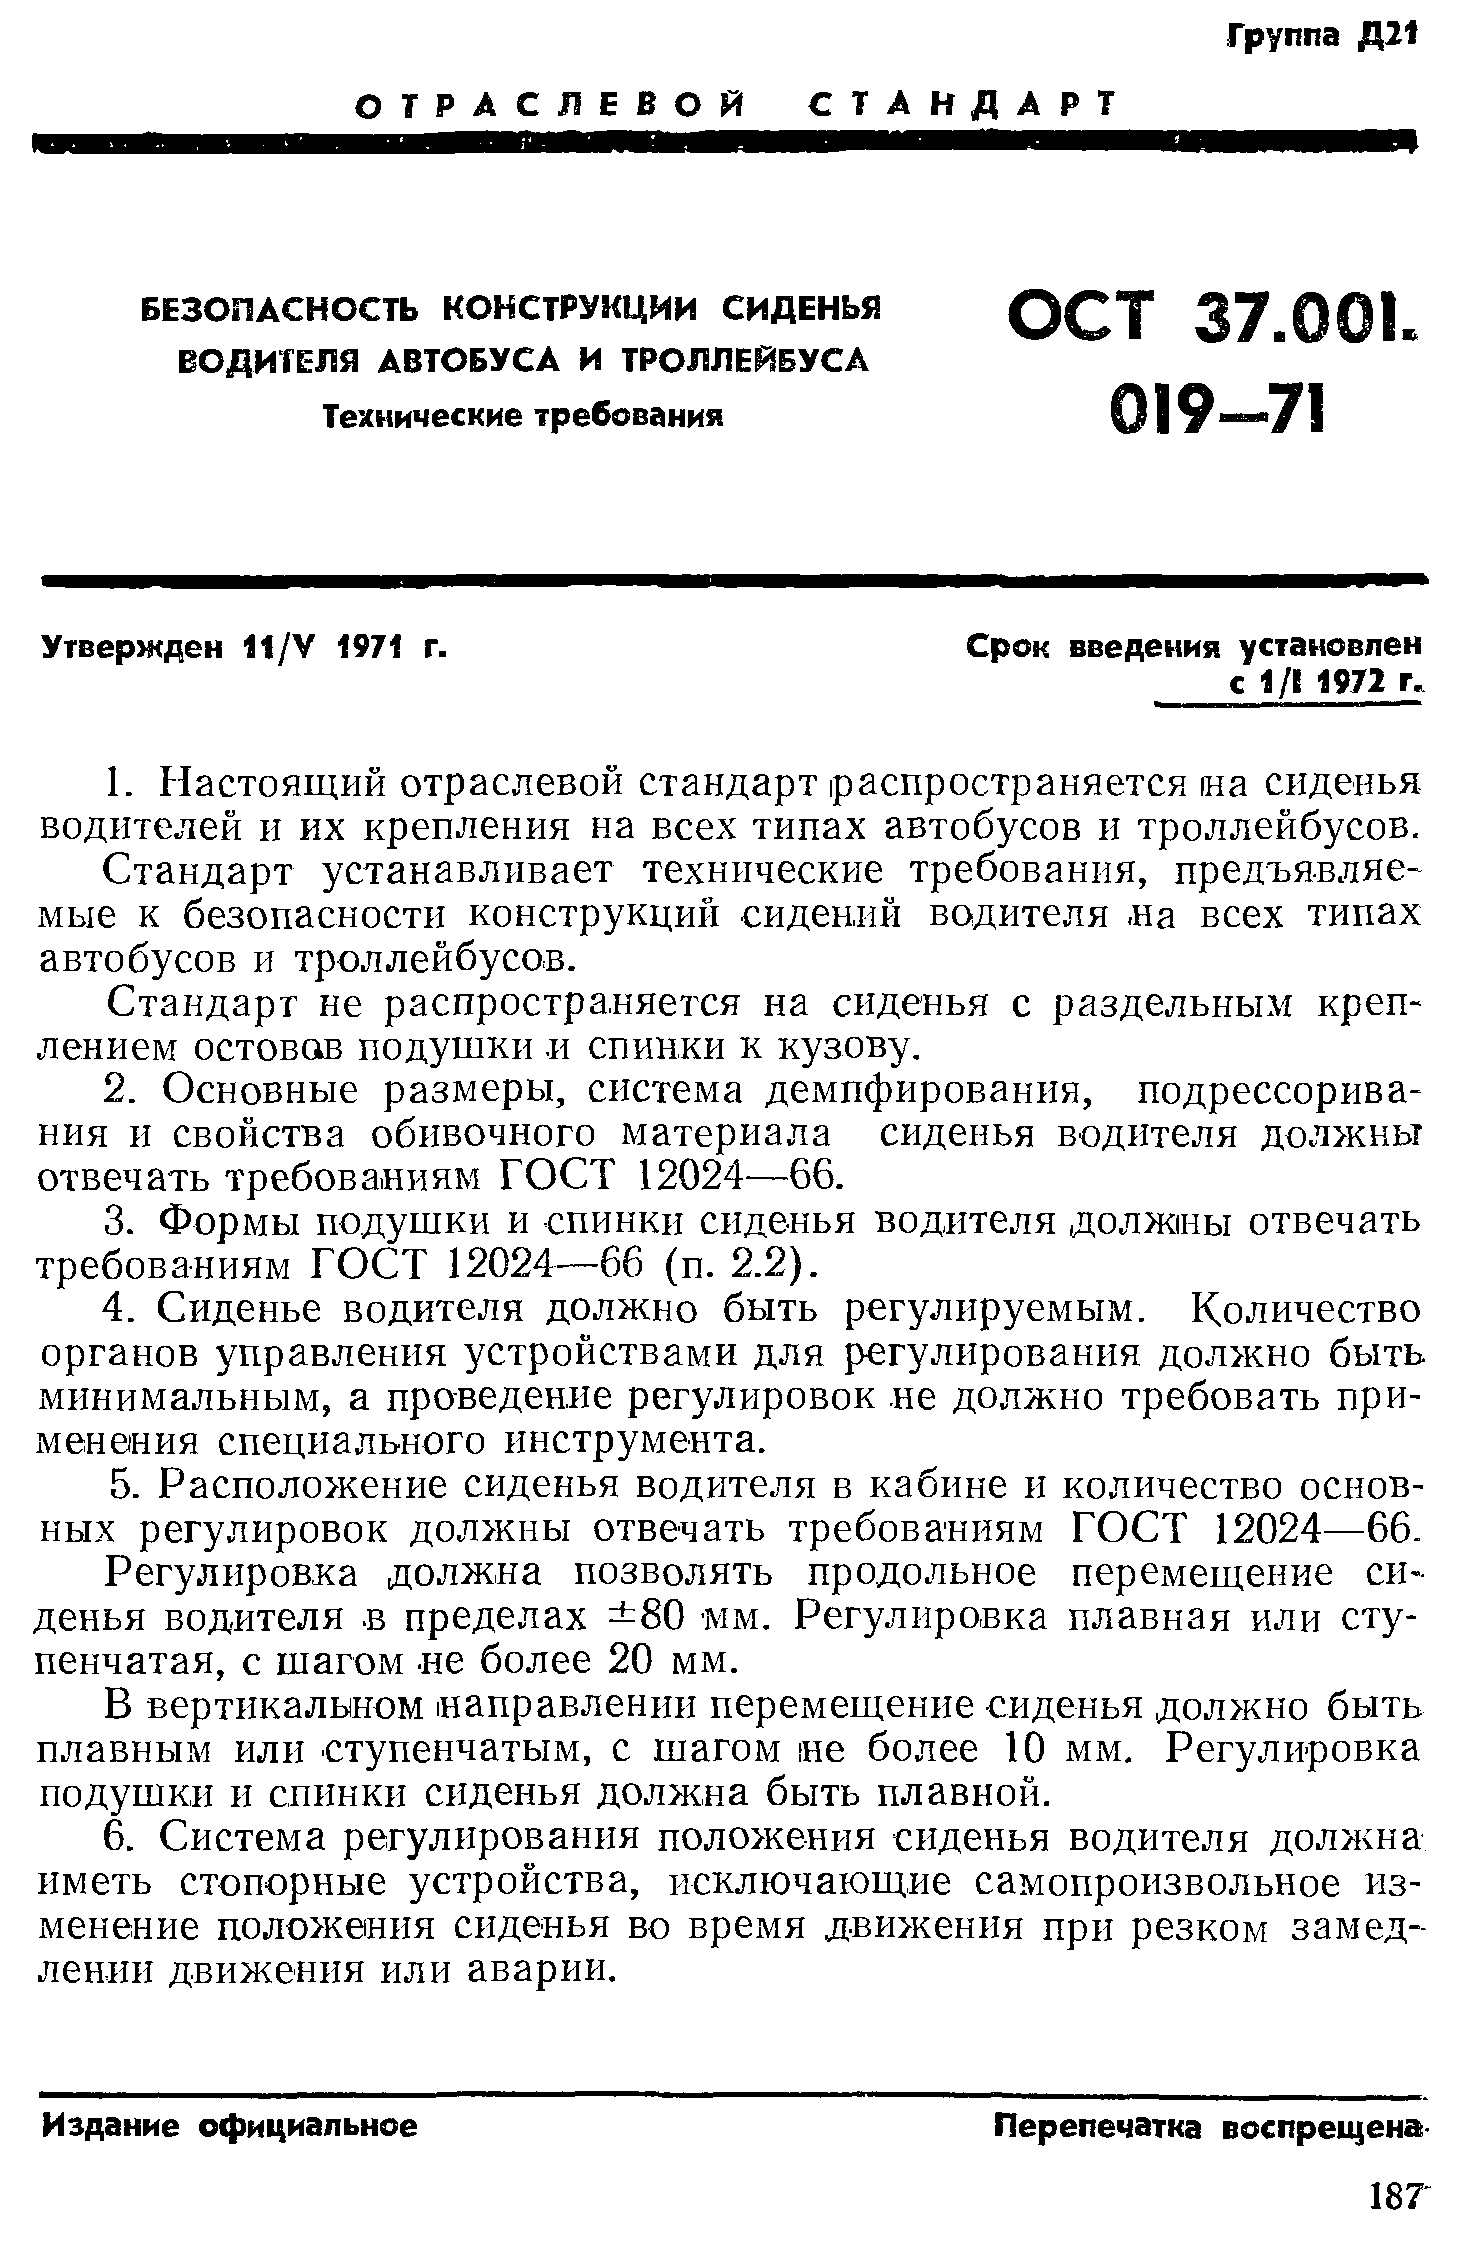 ОСТ 37.001.019-71